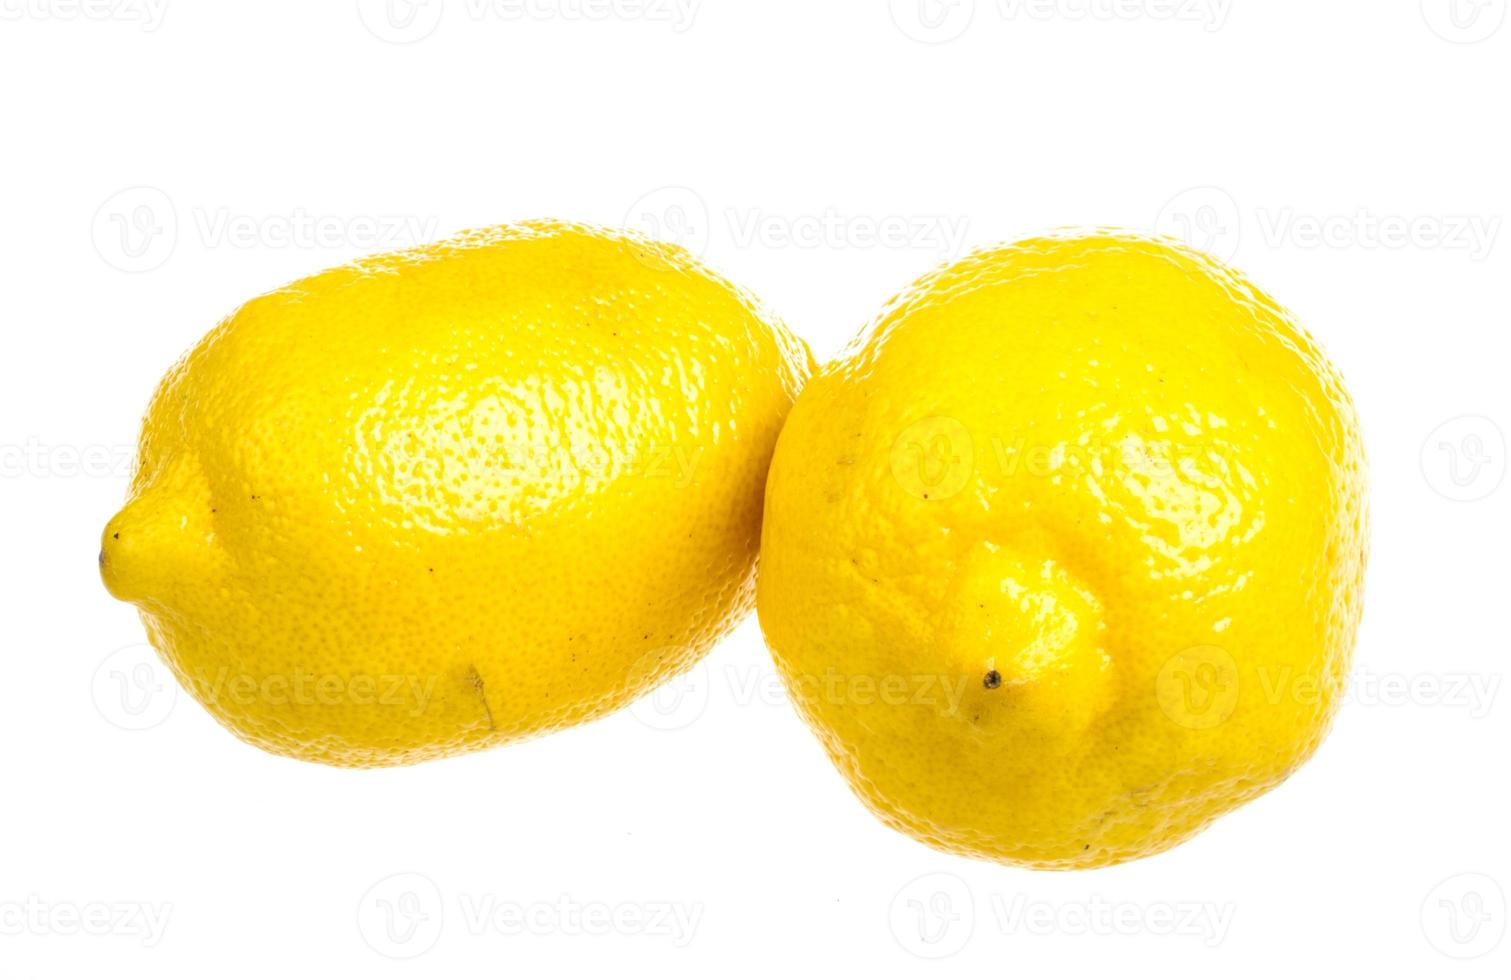 limones maduros frescos. aislado sobre fondo blanco foto